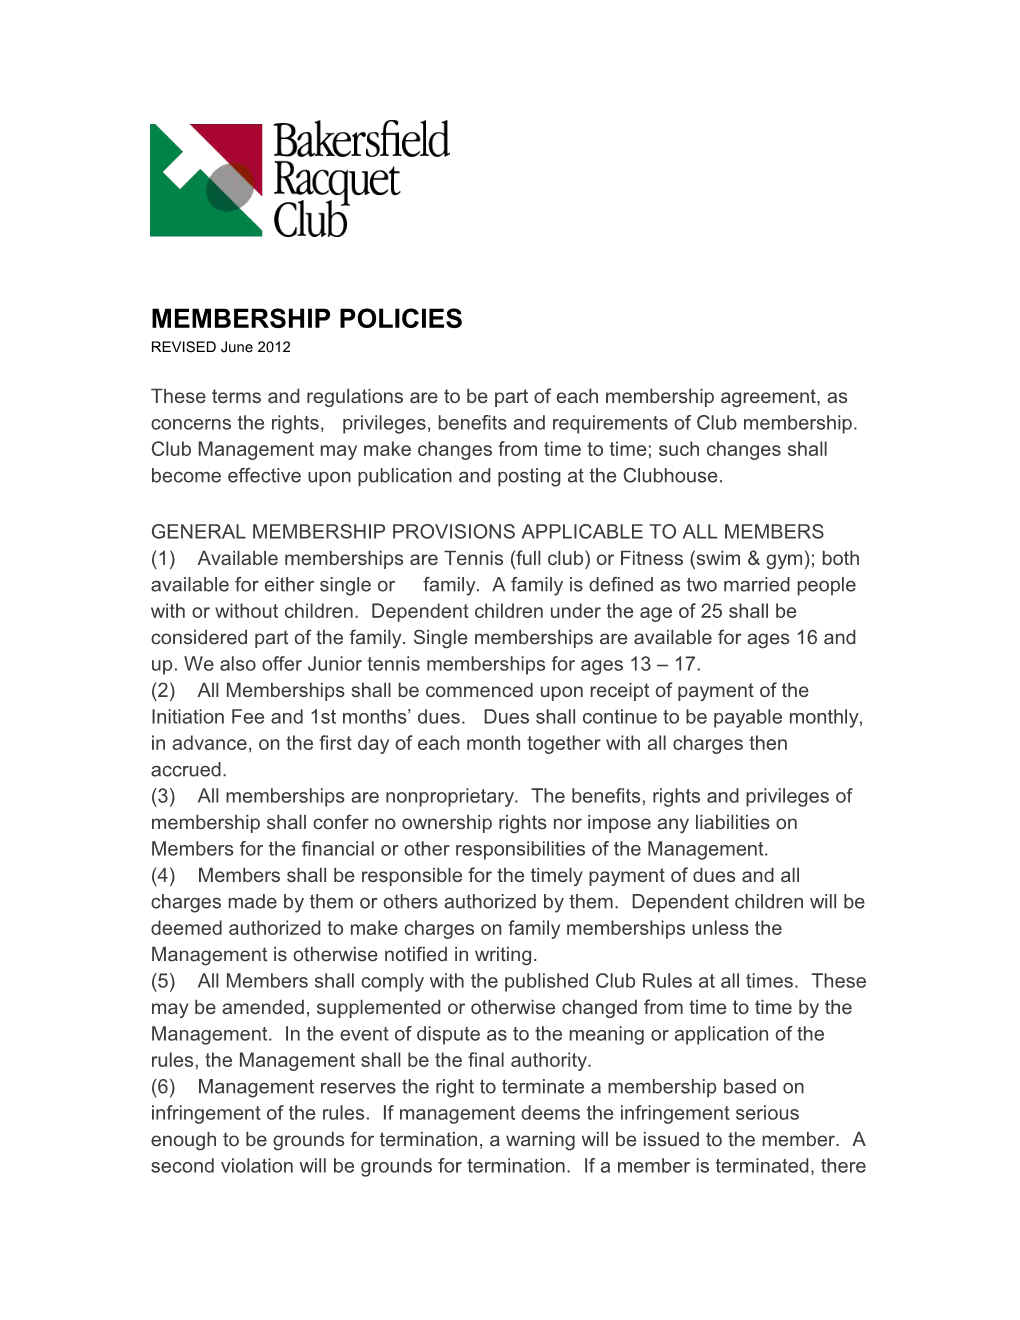 Membership Policies